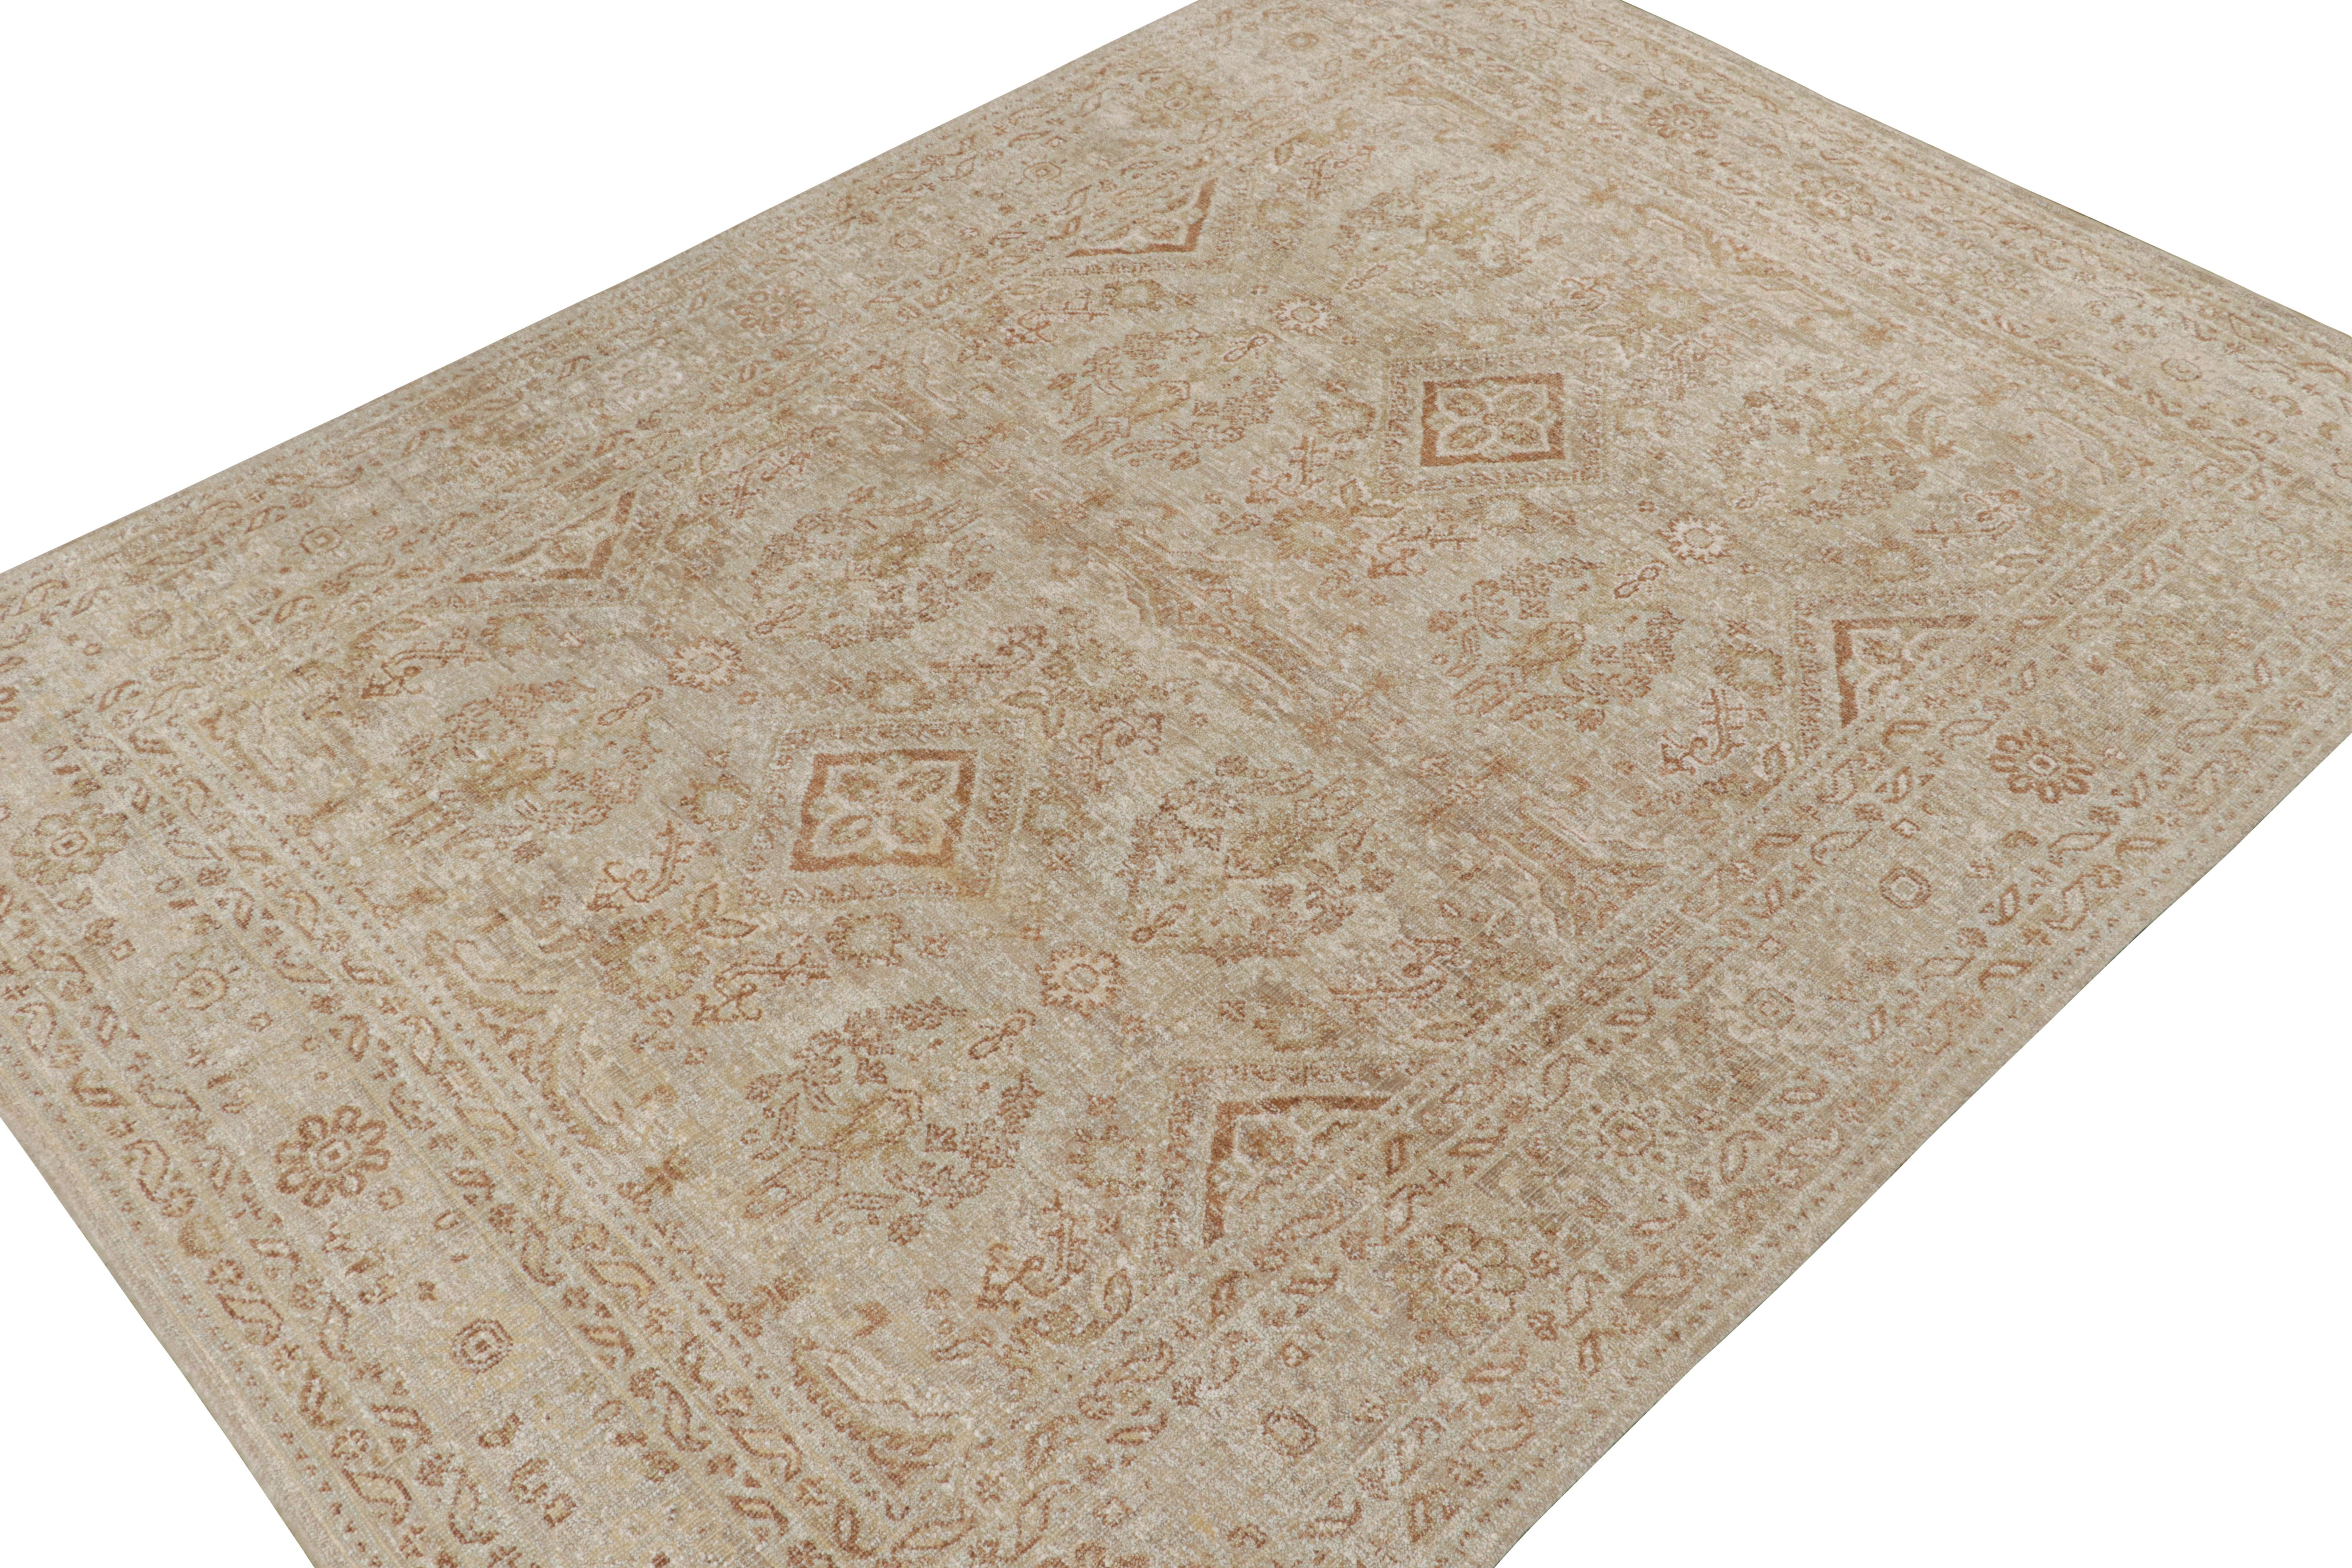 Rug & Kilim's Oushak Style Teppich in Beige-Braun & Weiß Geometrisch gemustert (Handgeknüpft) im Angebot